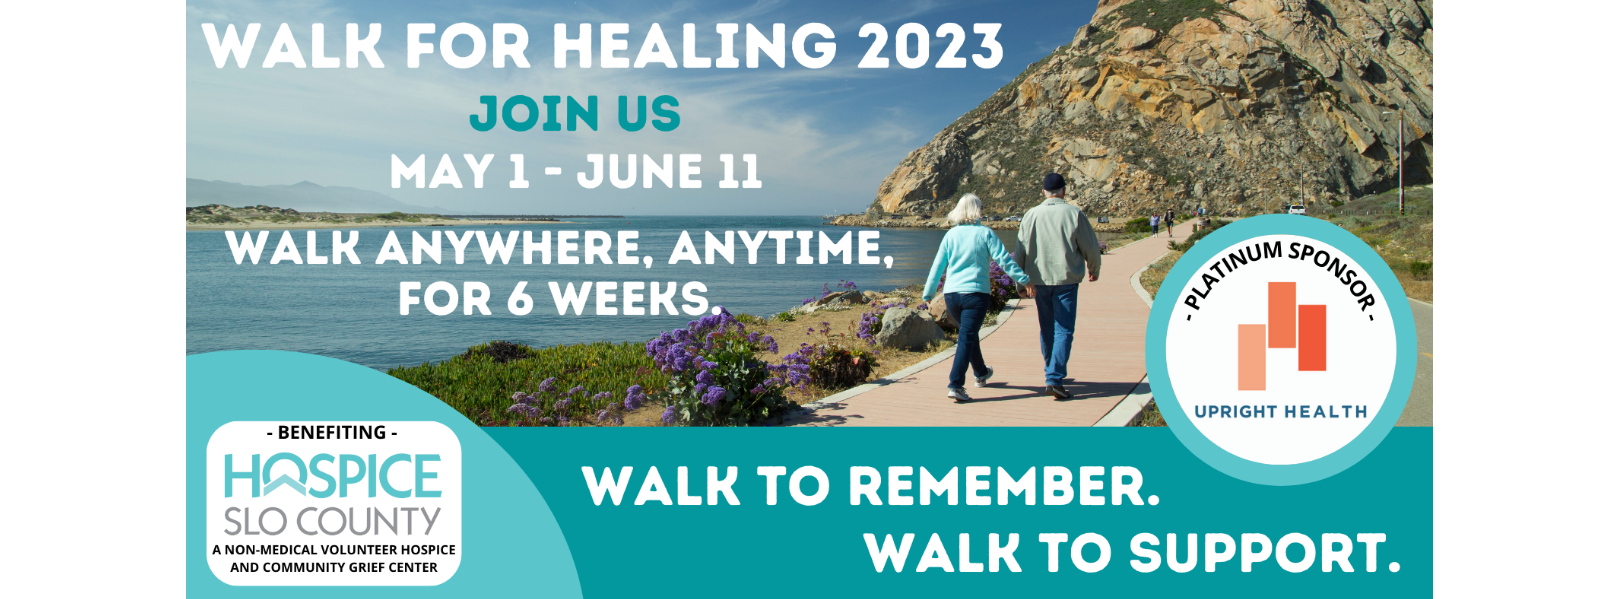 WALK FOR HEALING 2023